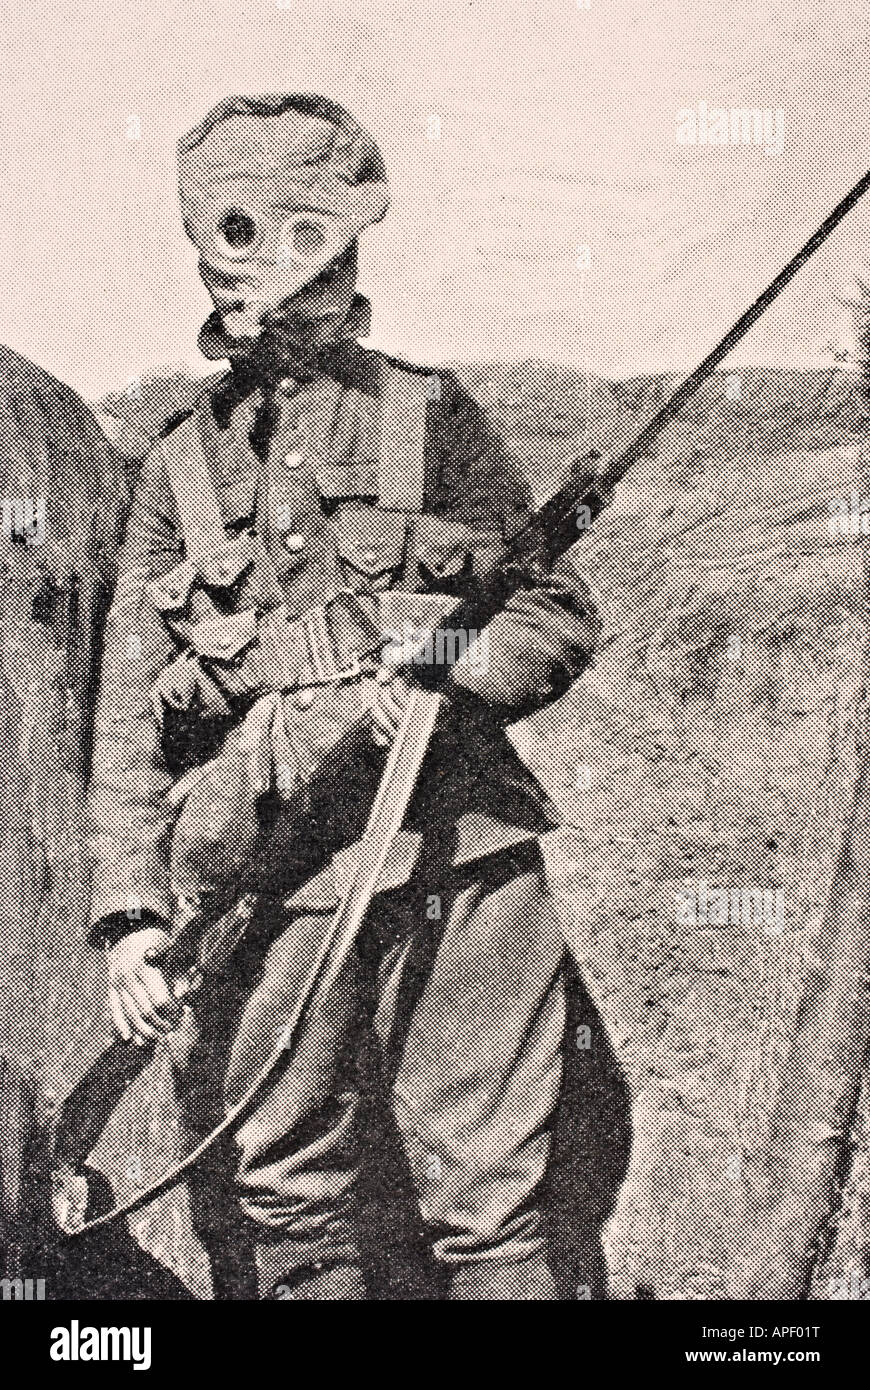 Kanadischer Soldat mit Gasmaske im Jahr 1915 während des Ersten Weltkriegs. Stockfoto